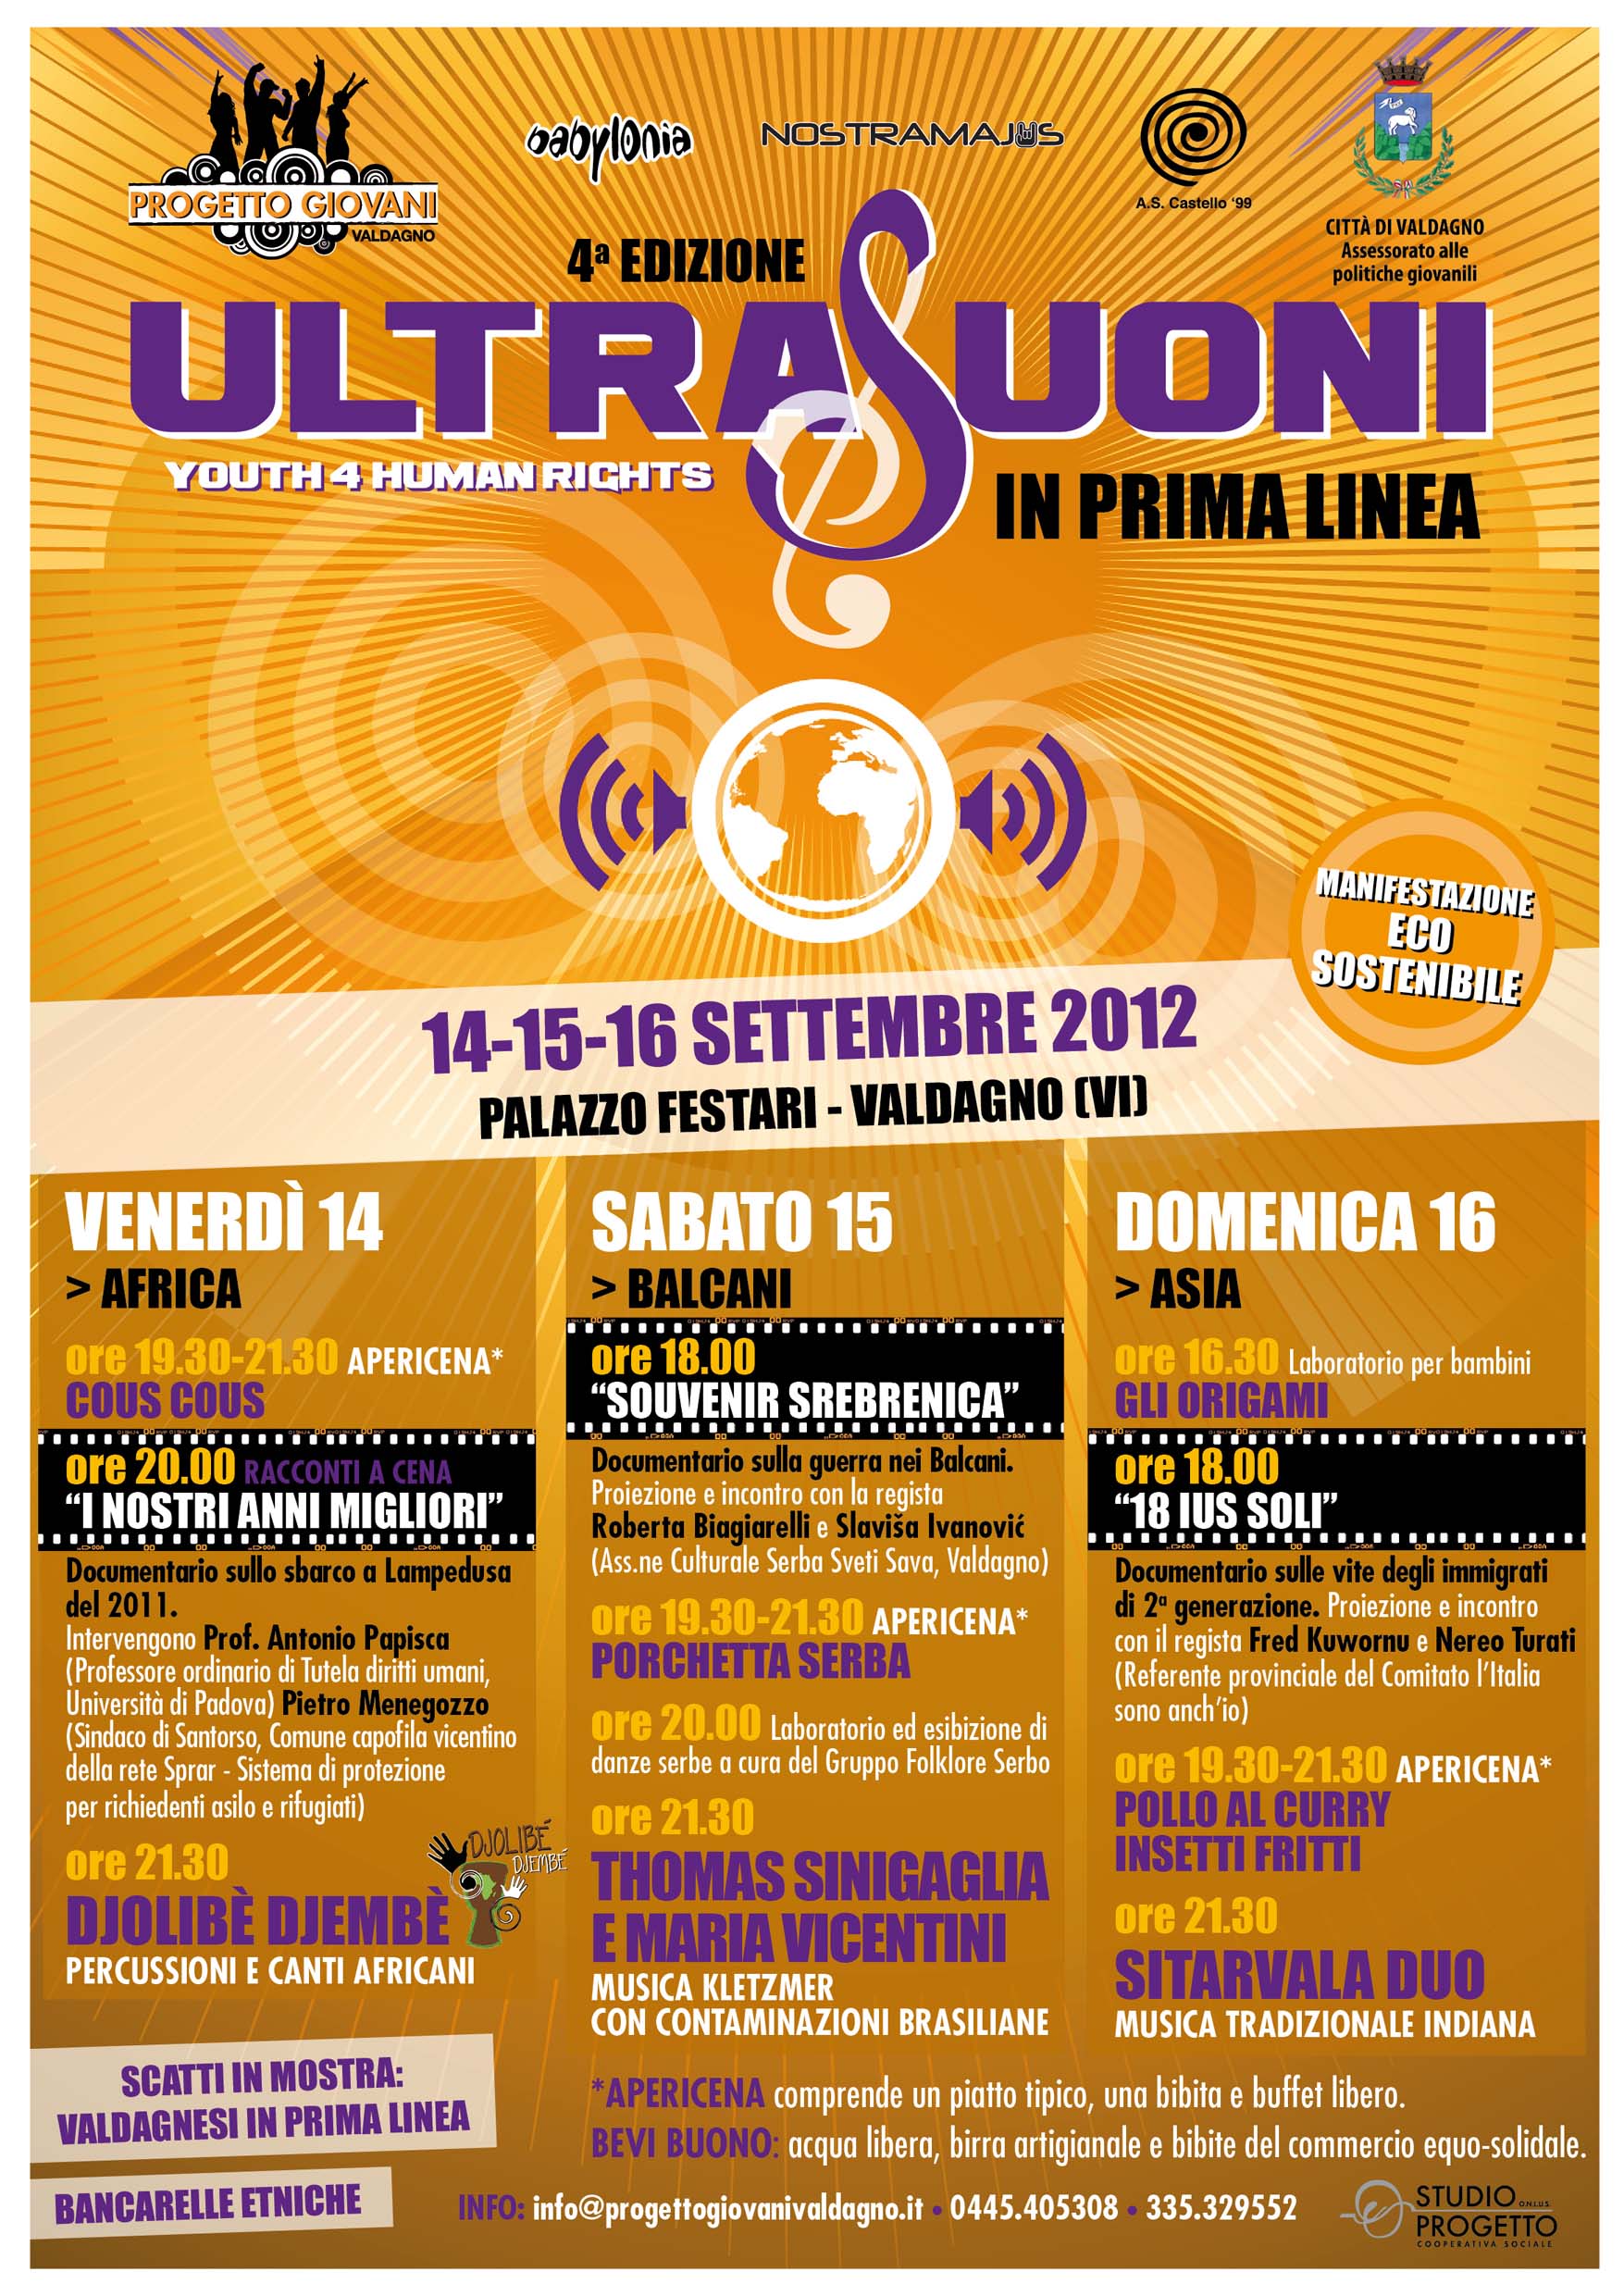 14-15-16 Settembre ULTRASUONI 2012 In Prima Linea